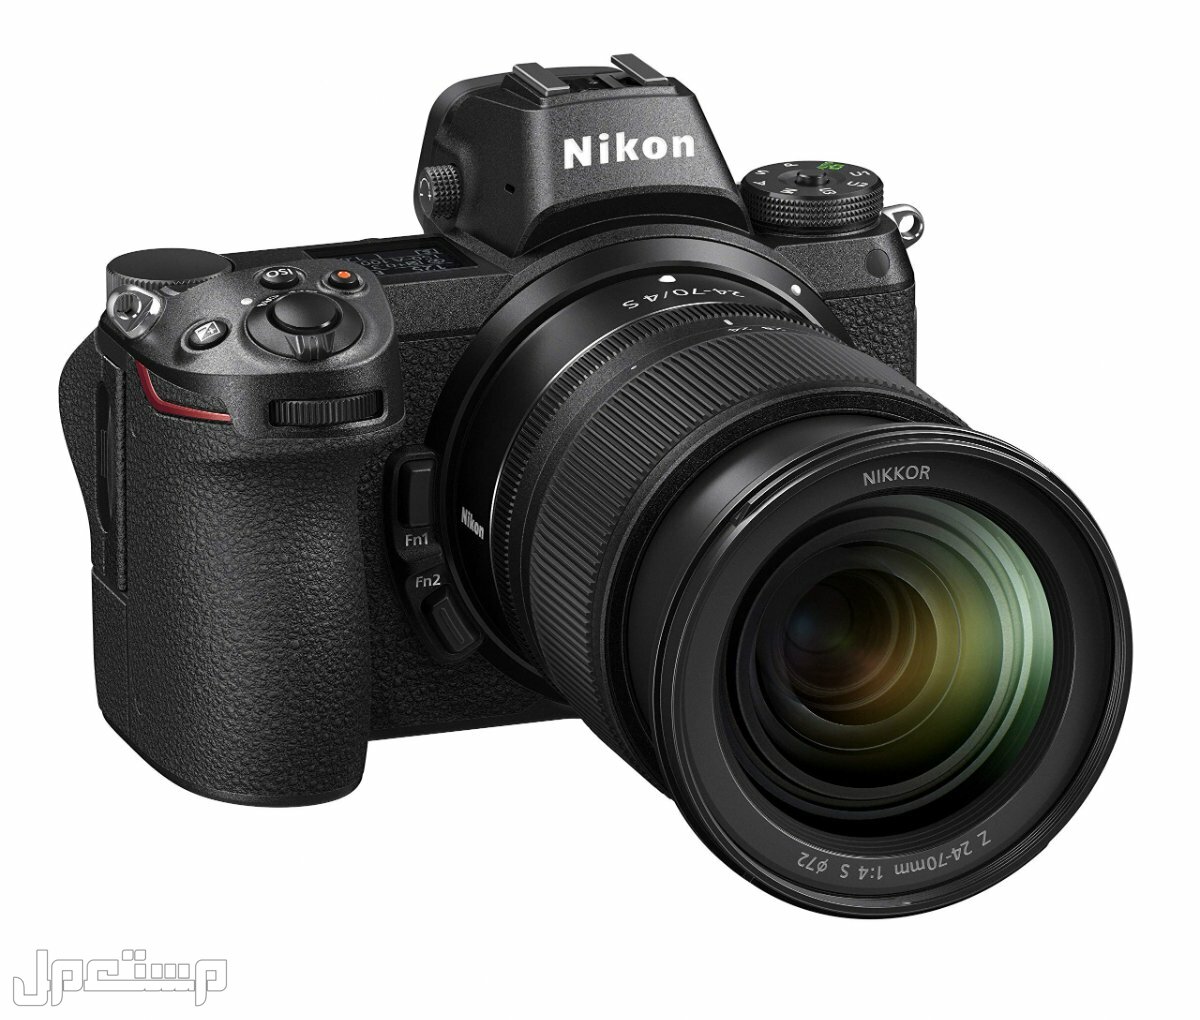 مواصفات ومميزات وأسعار أفضل أنواع كاميرات نيكون للمحترفين في الجزائر كاميرا Nikon Z6